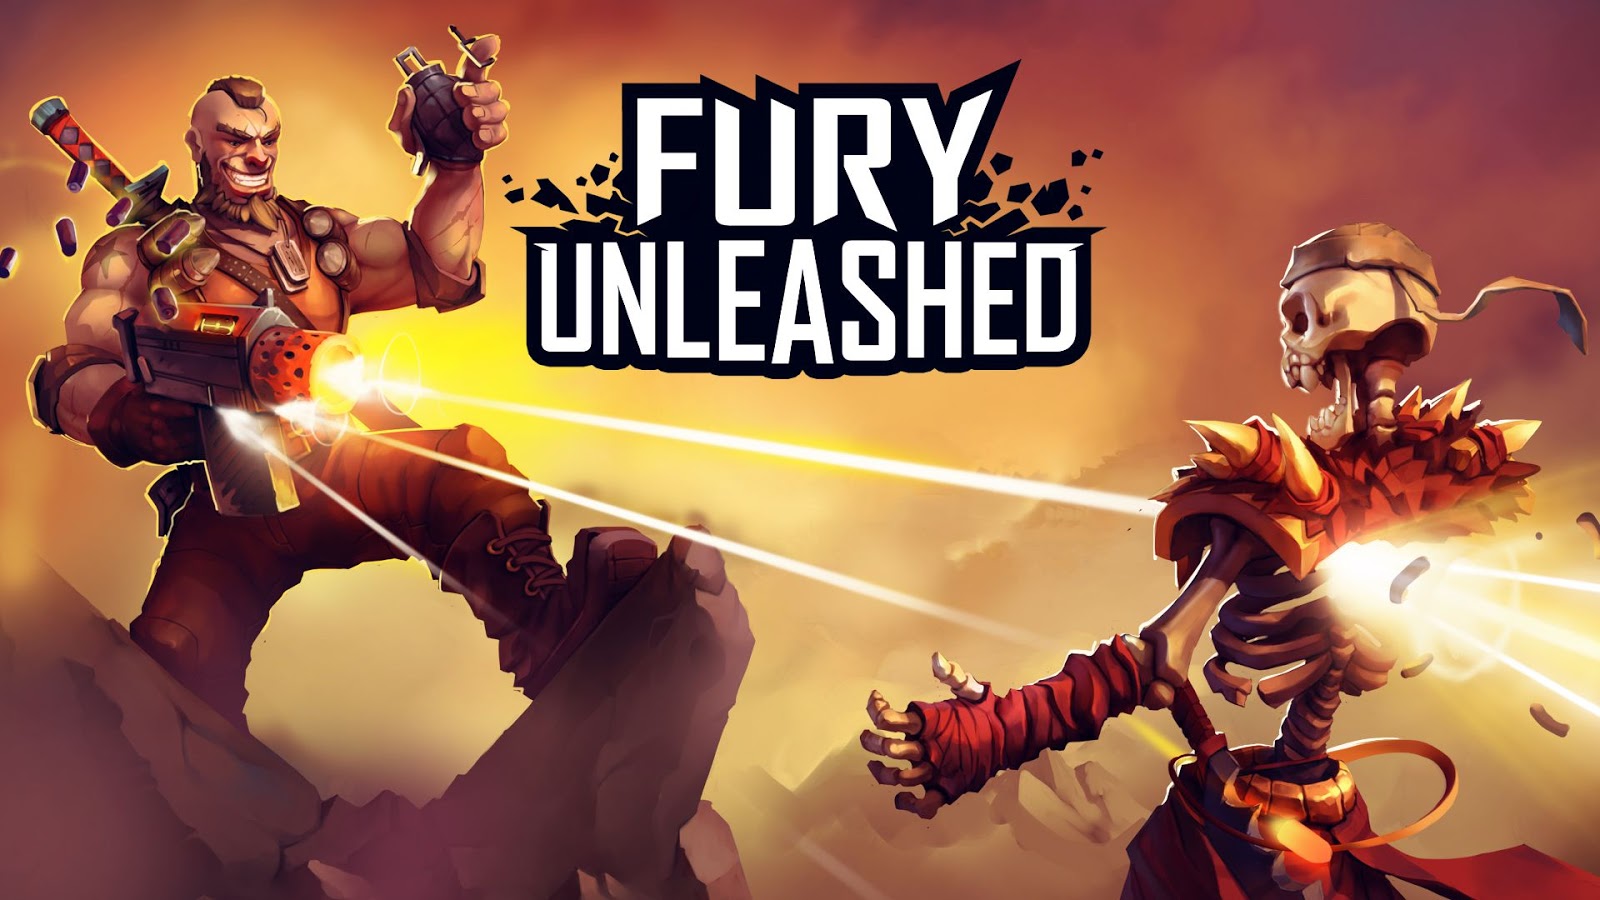 Análise: Fury Unleashed (Switch) combina gráficos cartunescos e ação frenética